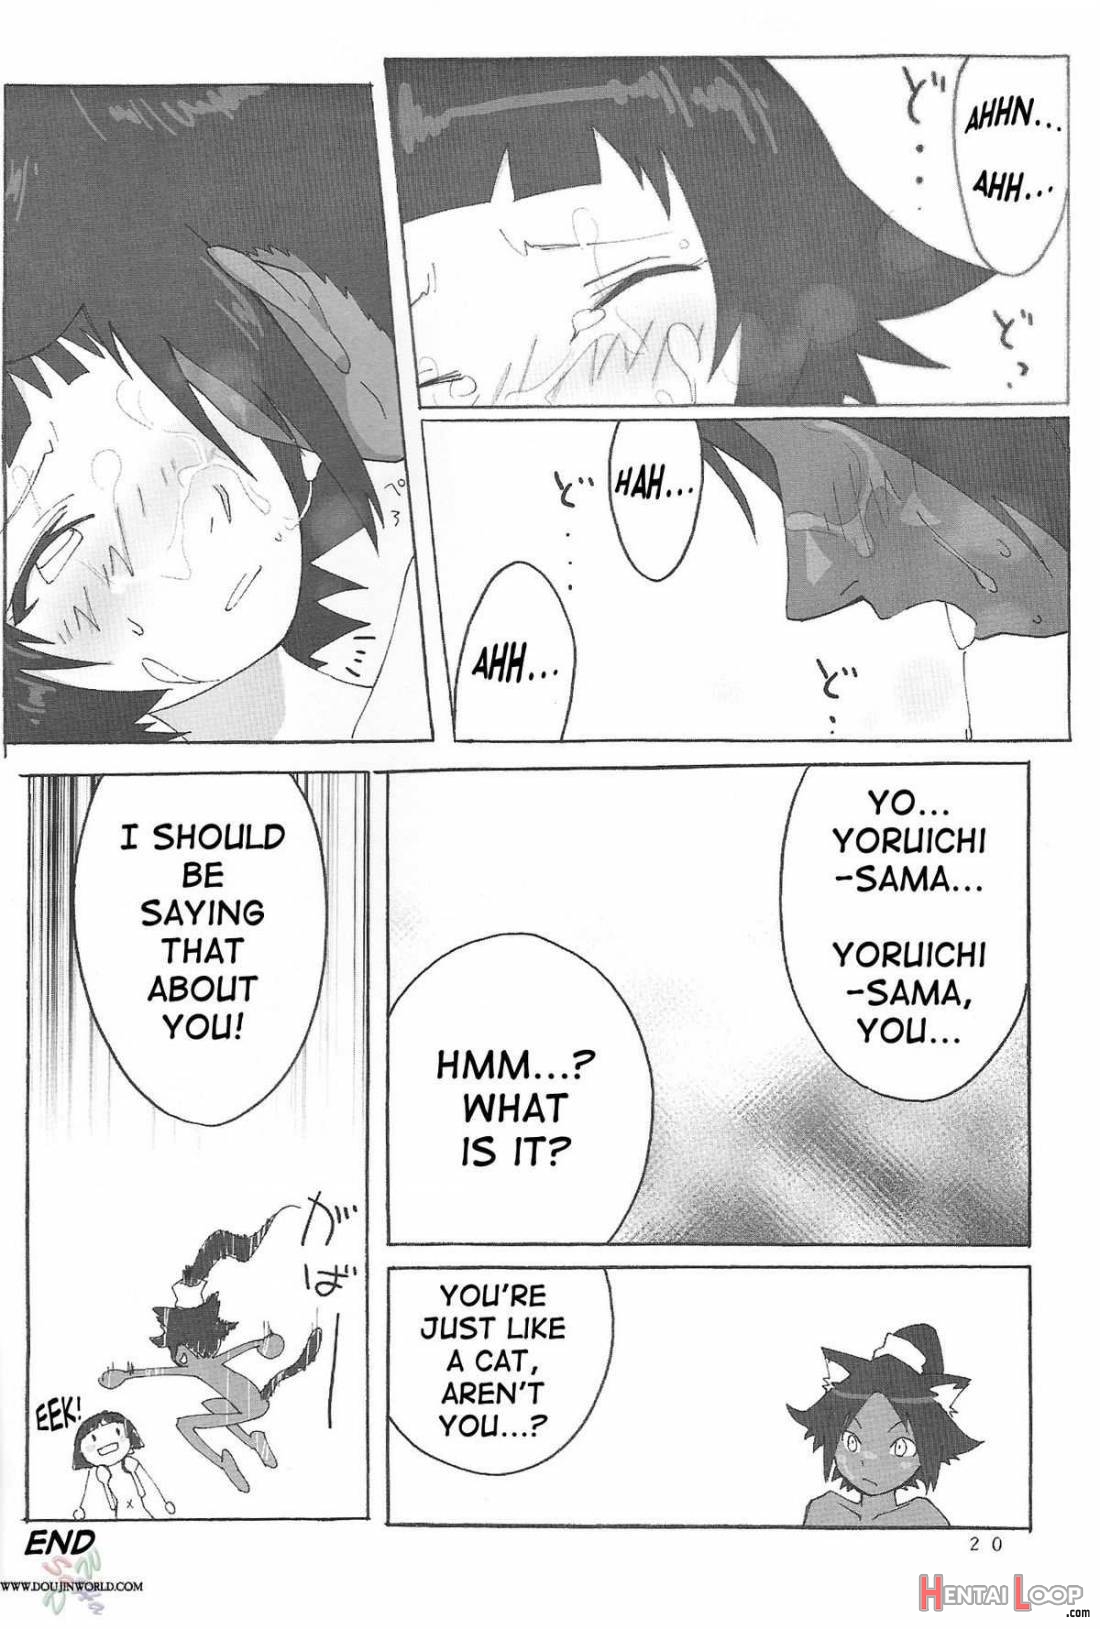 Yoruichi-sama page 19